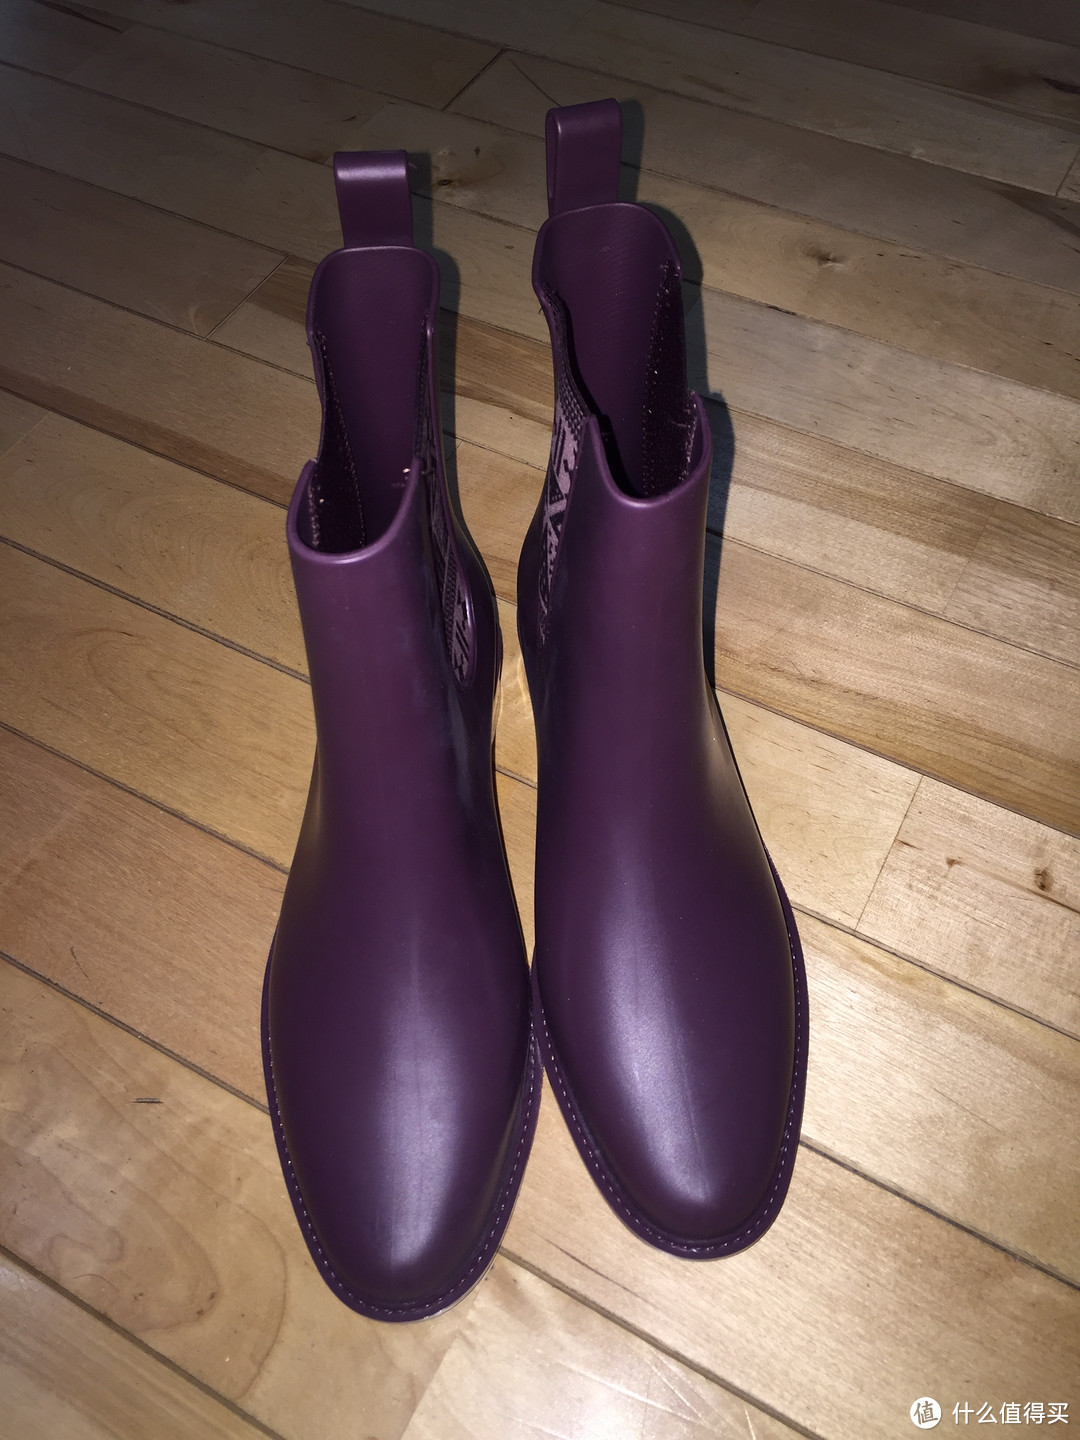 #本站首晒# 来自英国的雨靴 — Mel by Melissa Mel Plum 女士短靴开箱